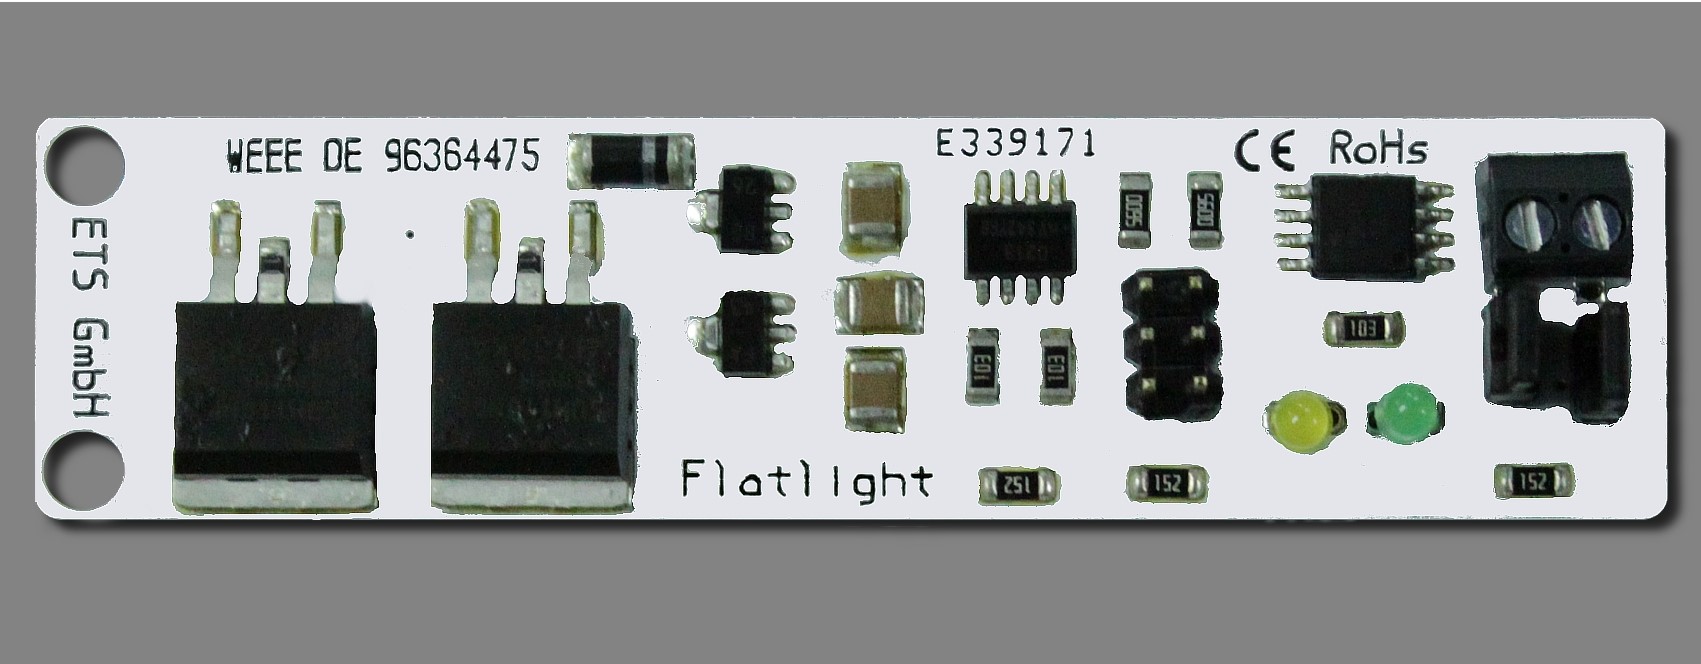 LED Flatlight Dimm, Dimmer, LED